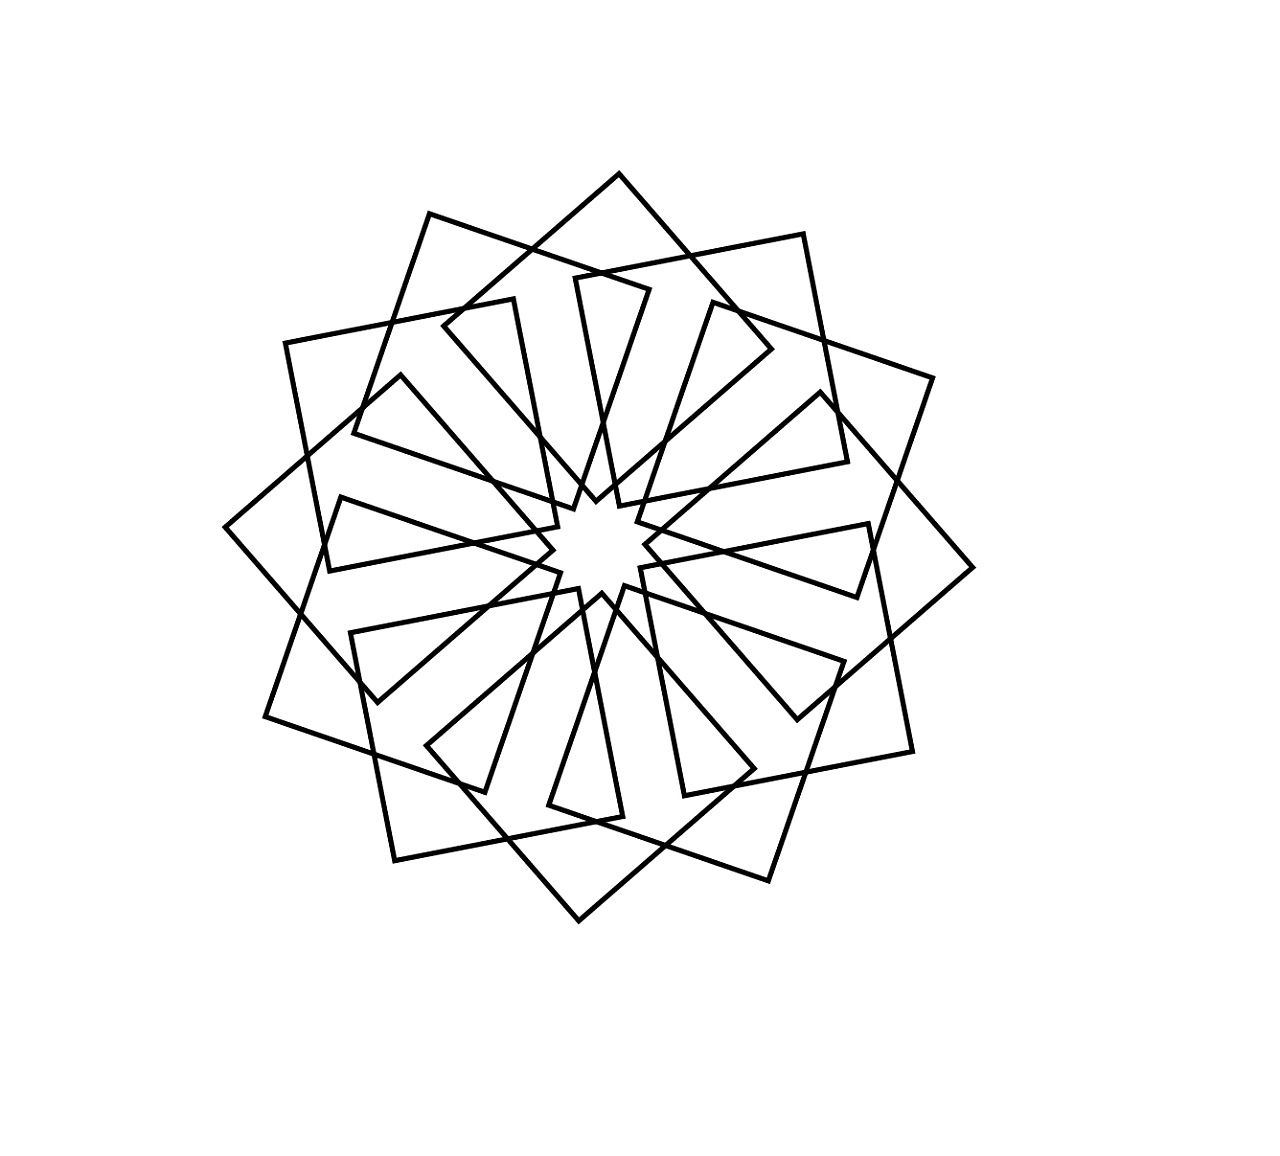 几何简单图形简单图案001